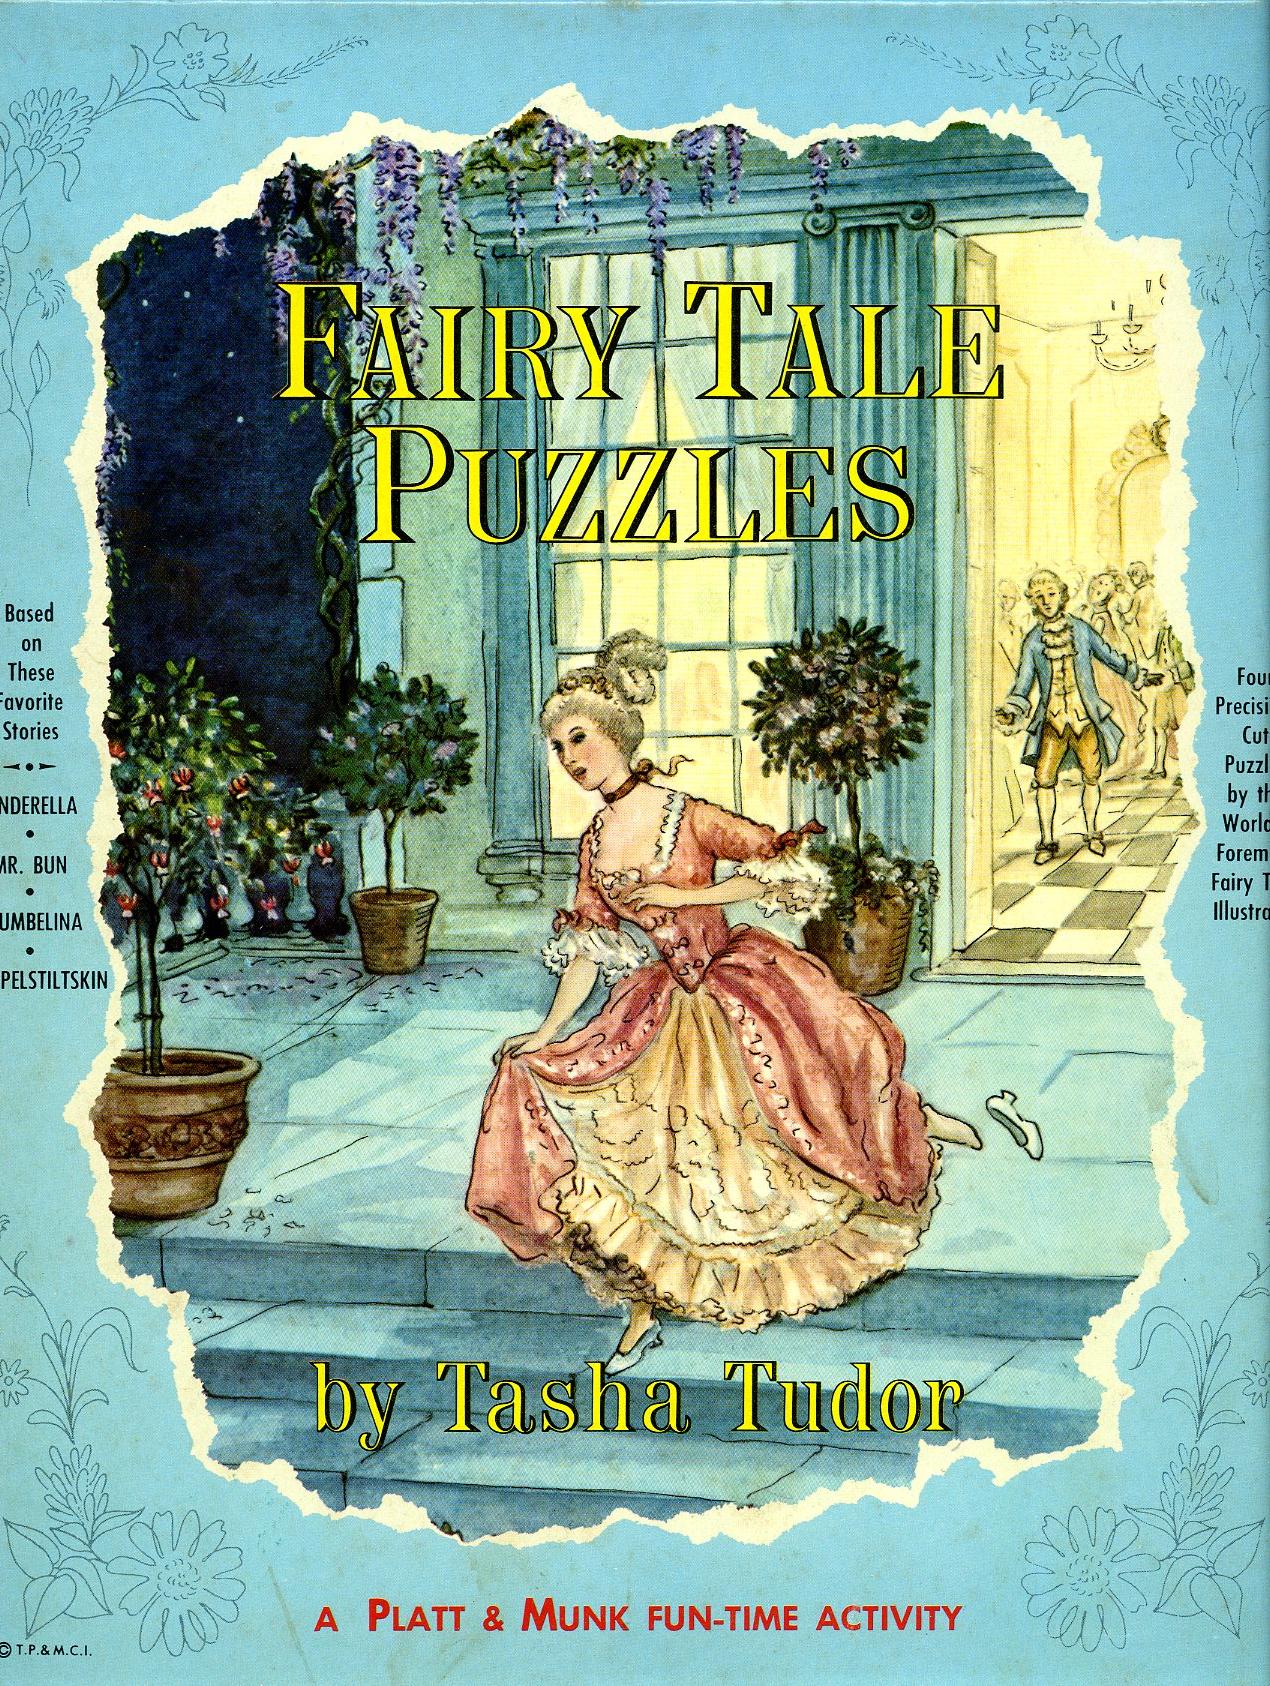 FAIRY TALE PUZZLES blue box by Tasha Tudor on Cellar Door Books